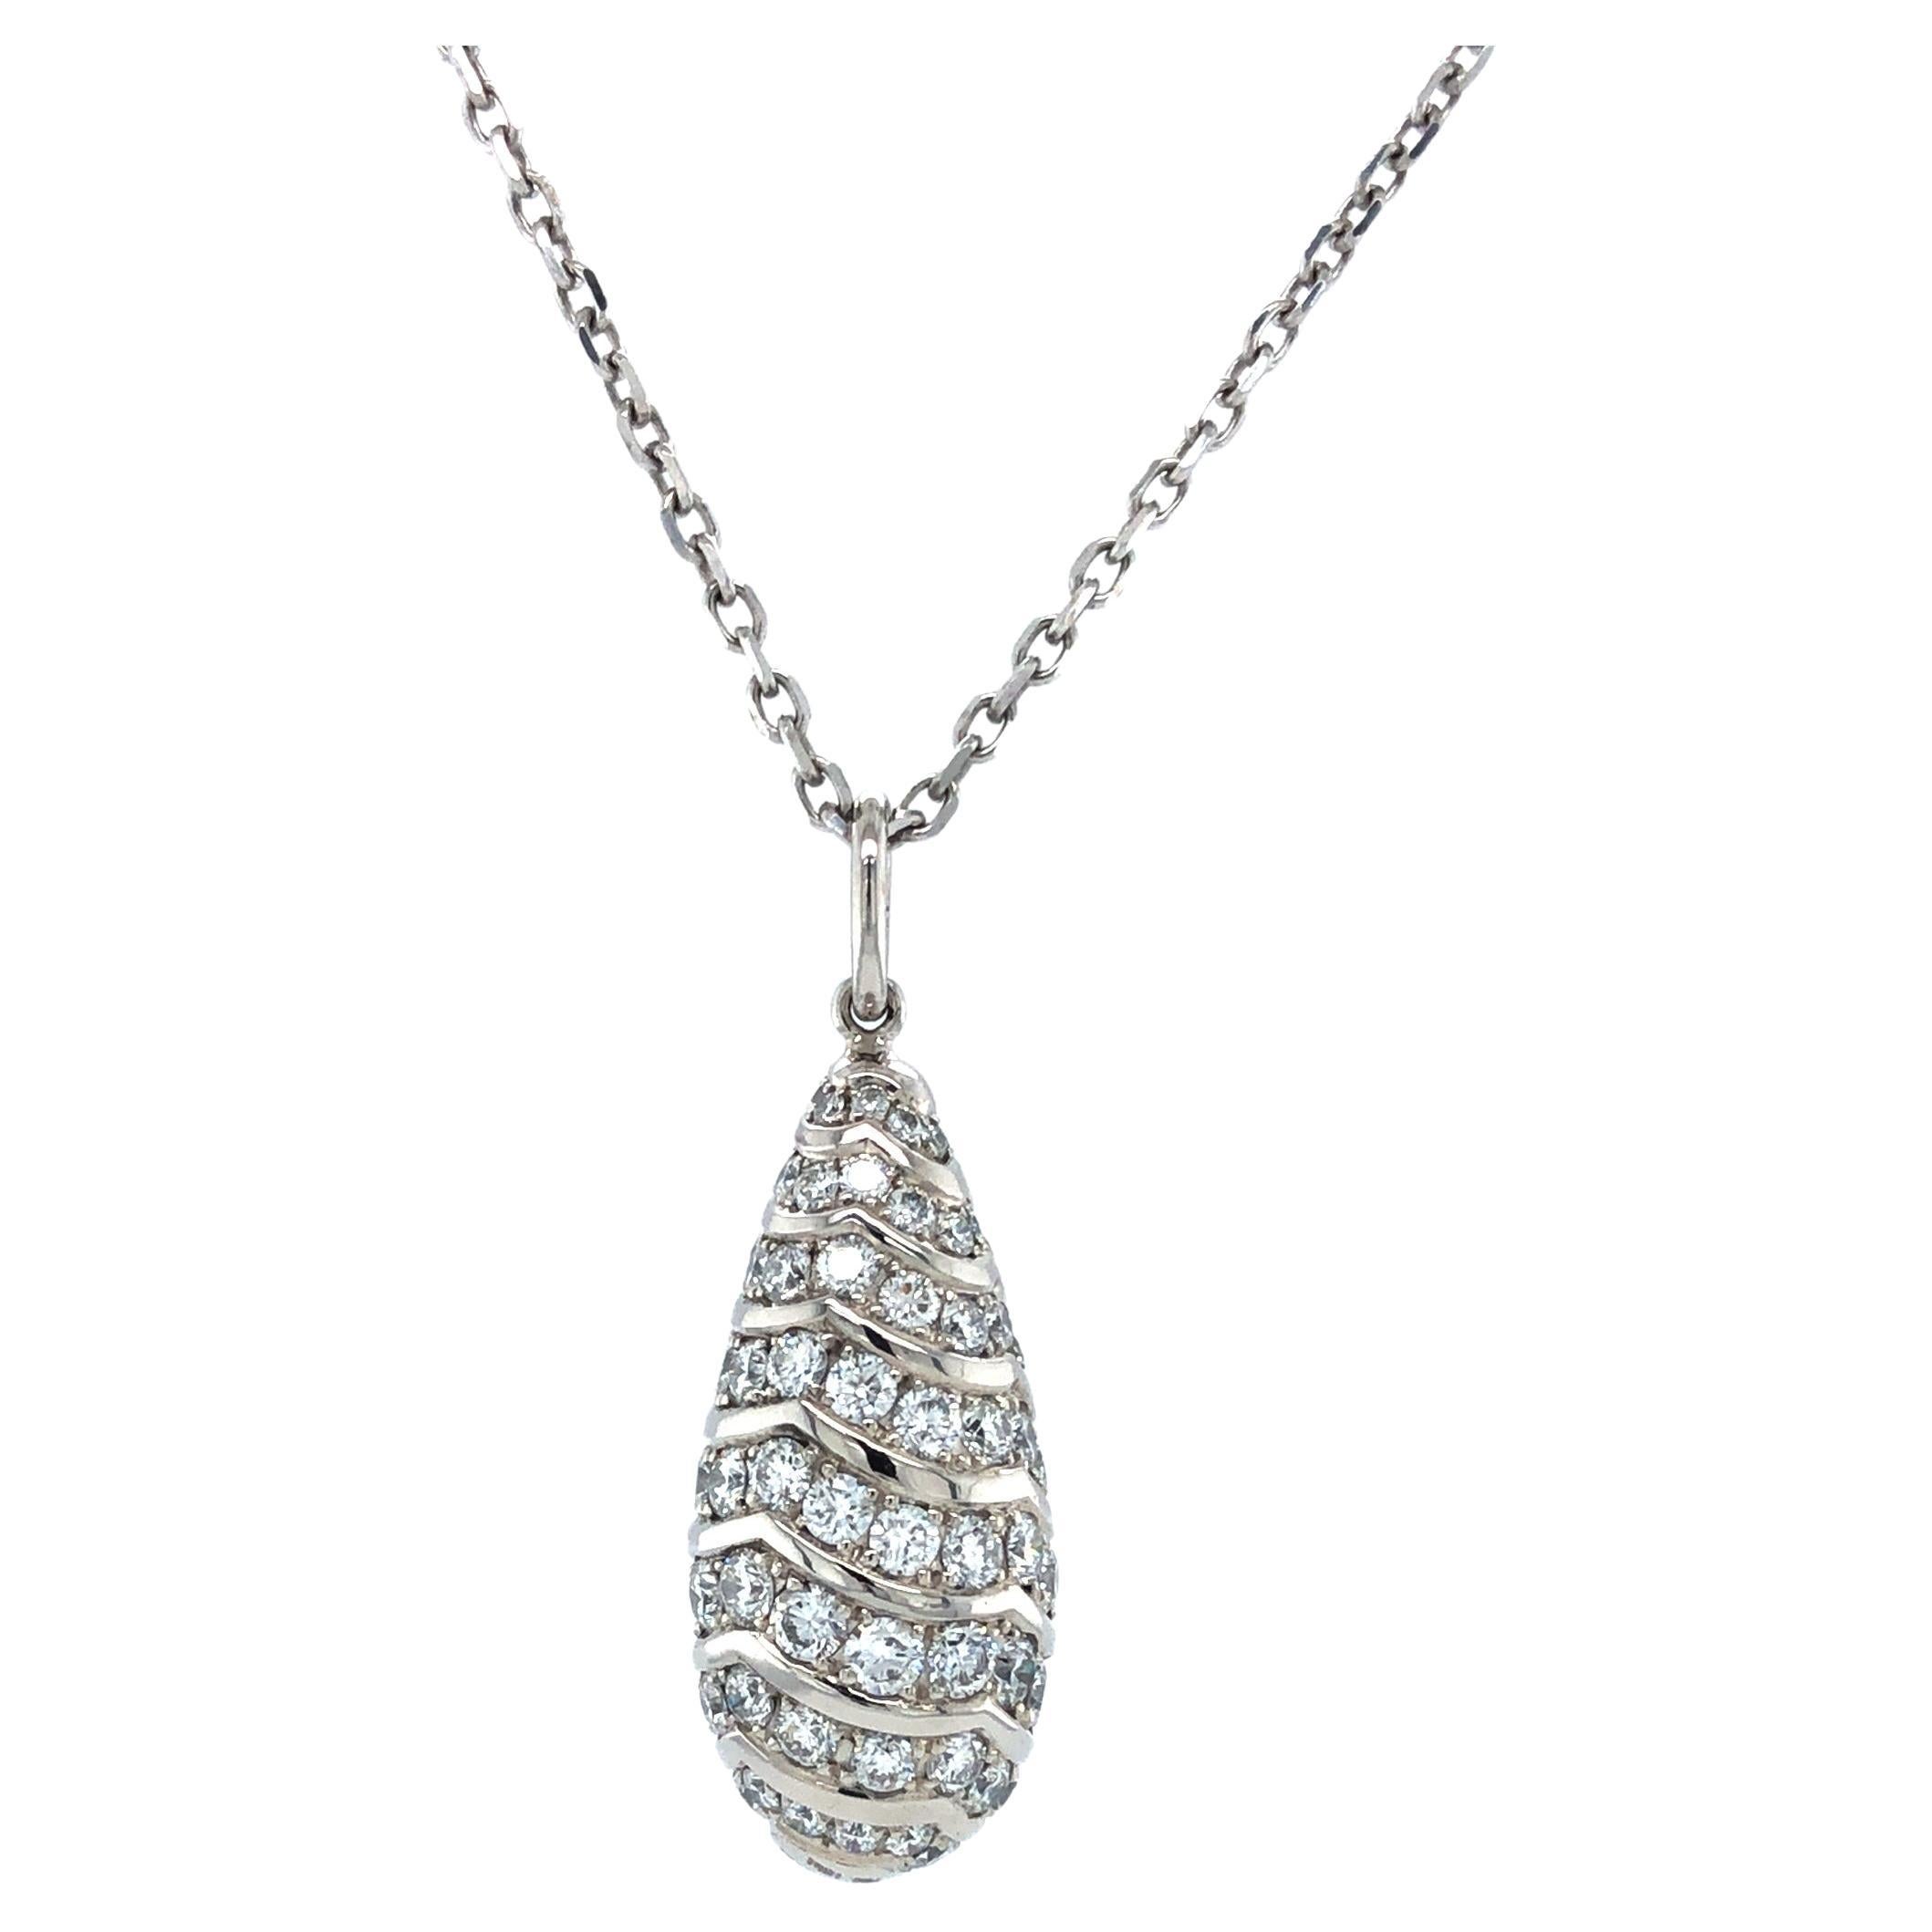 Halskette mit Tropfenanhänger - 18 Karat Weißgold - 91 Diamanten insgesamt 1,51 Karat G VS